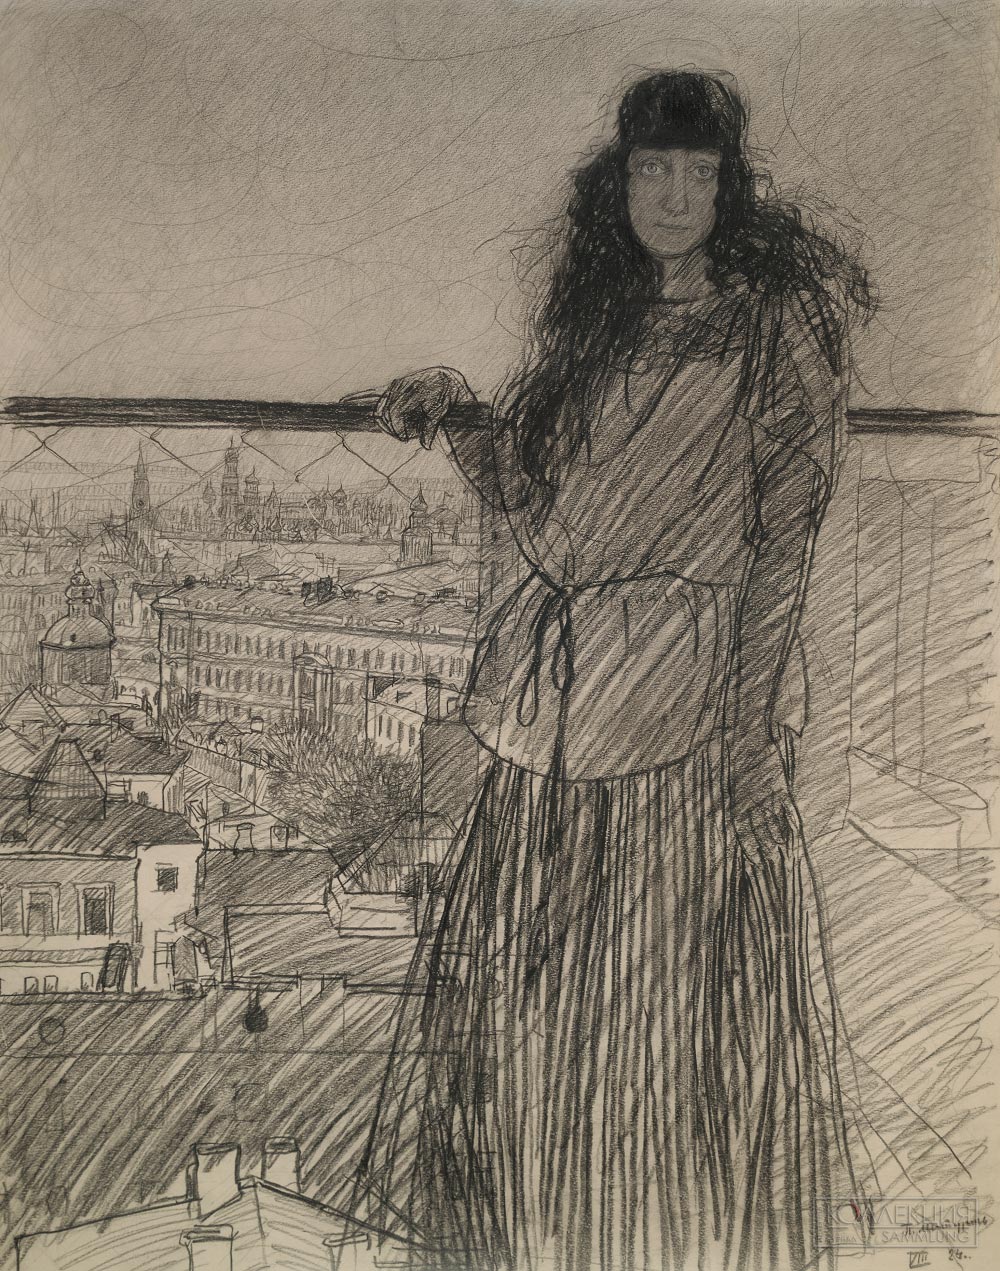 Митурич П.В. Портрет Веры Хлебниковой-Митурич, жены художника. 1924. Третьяковская галерея